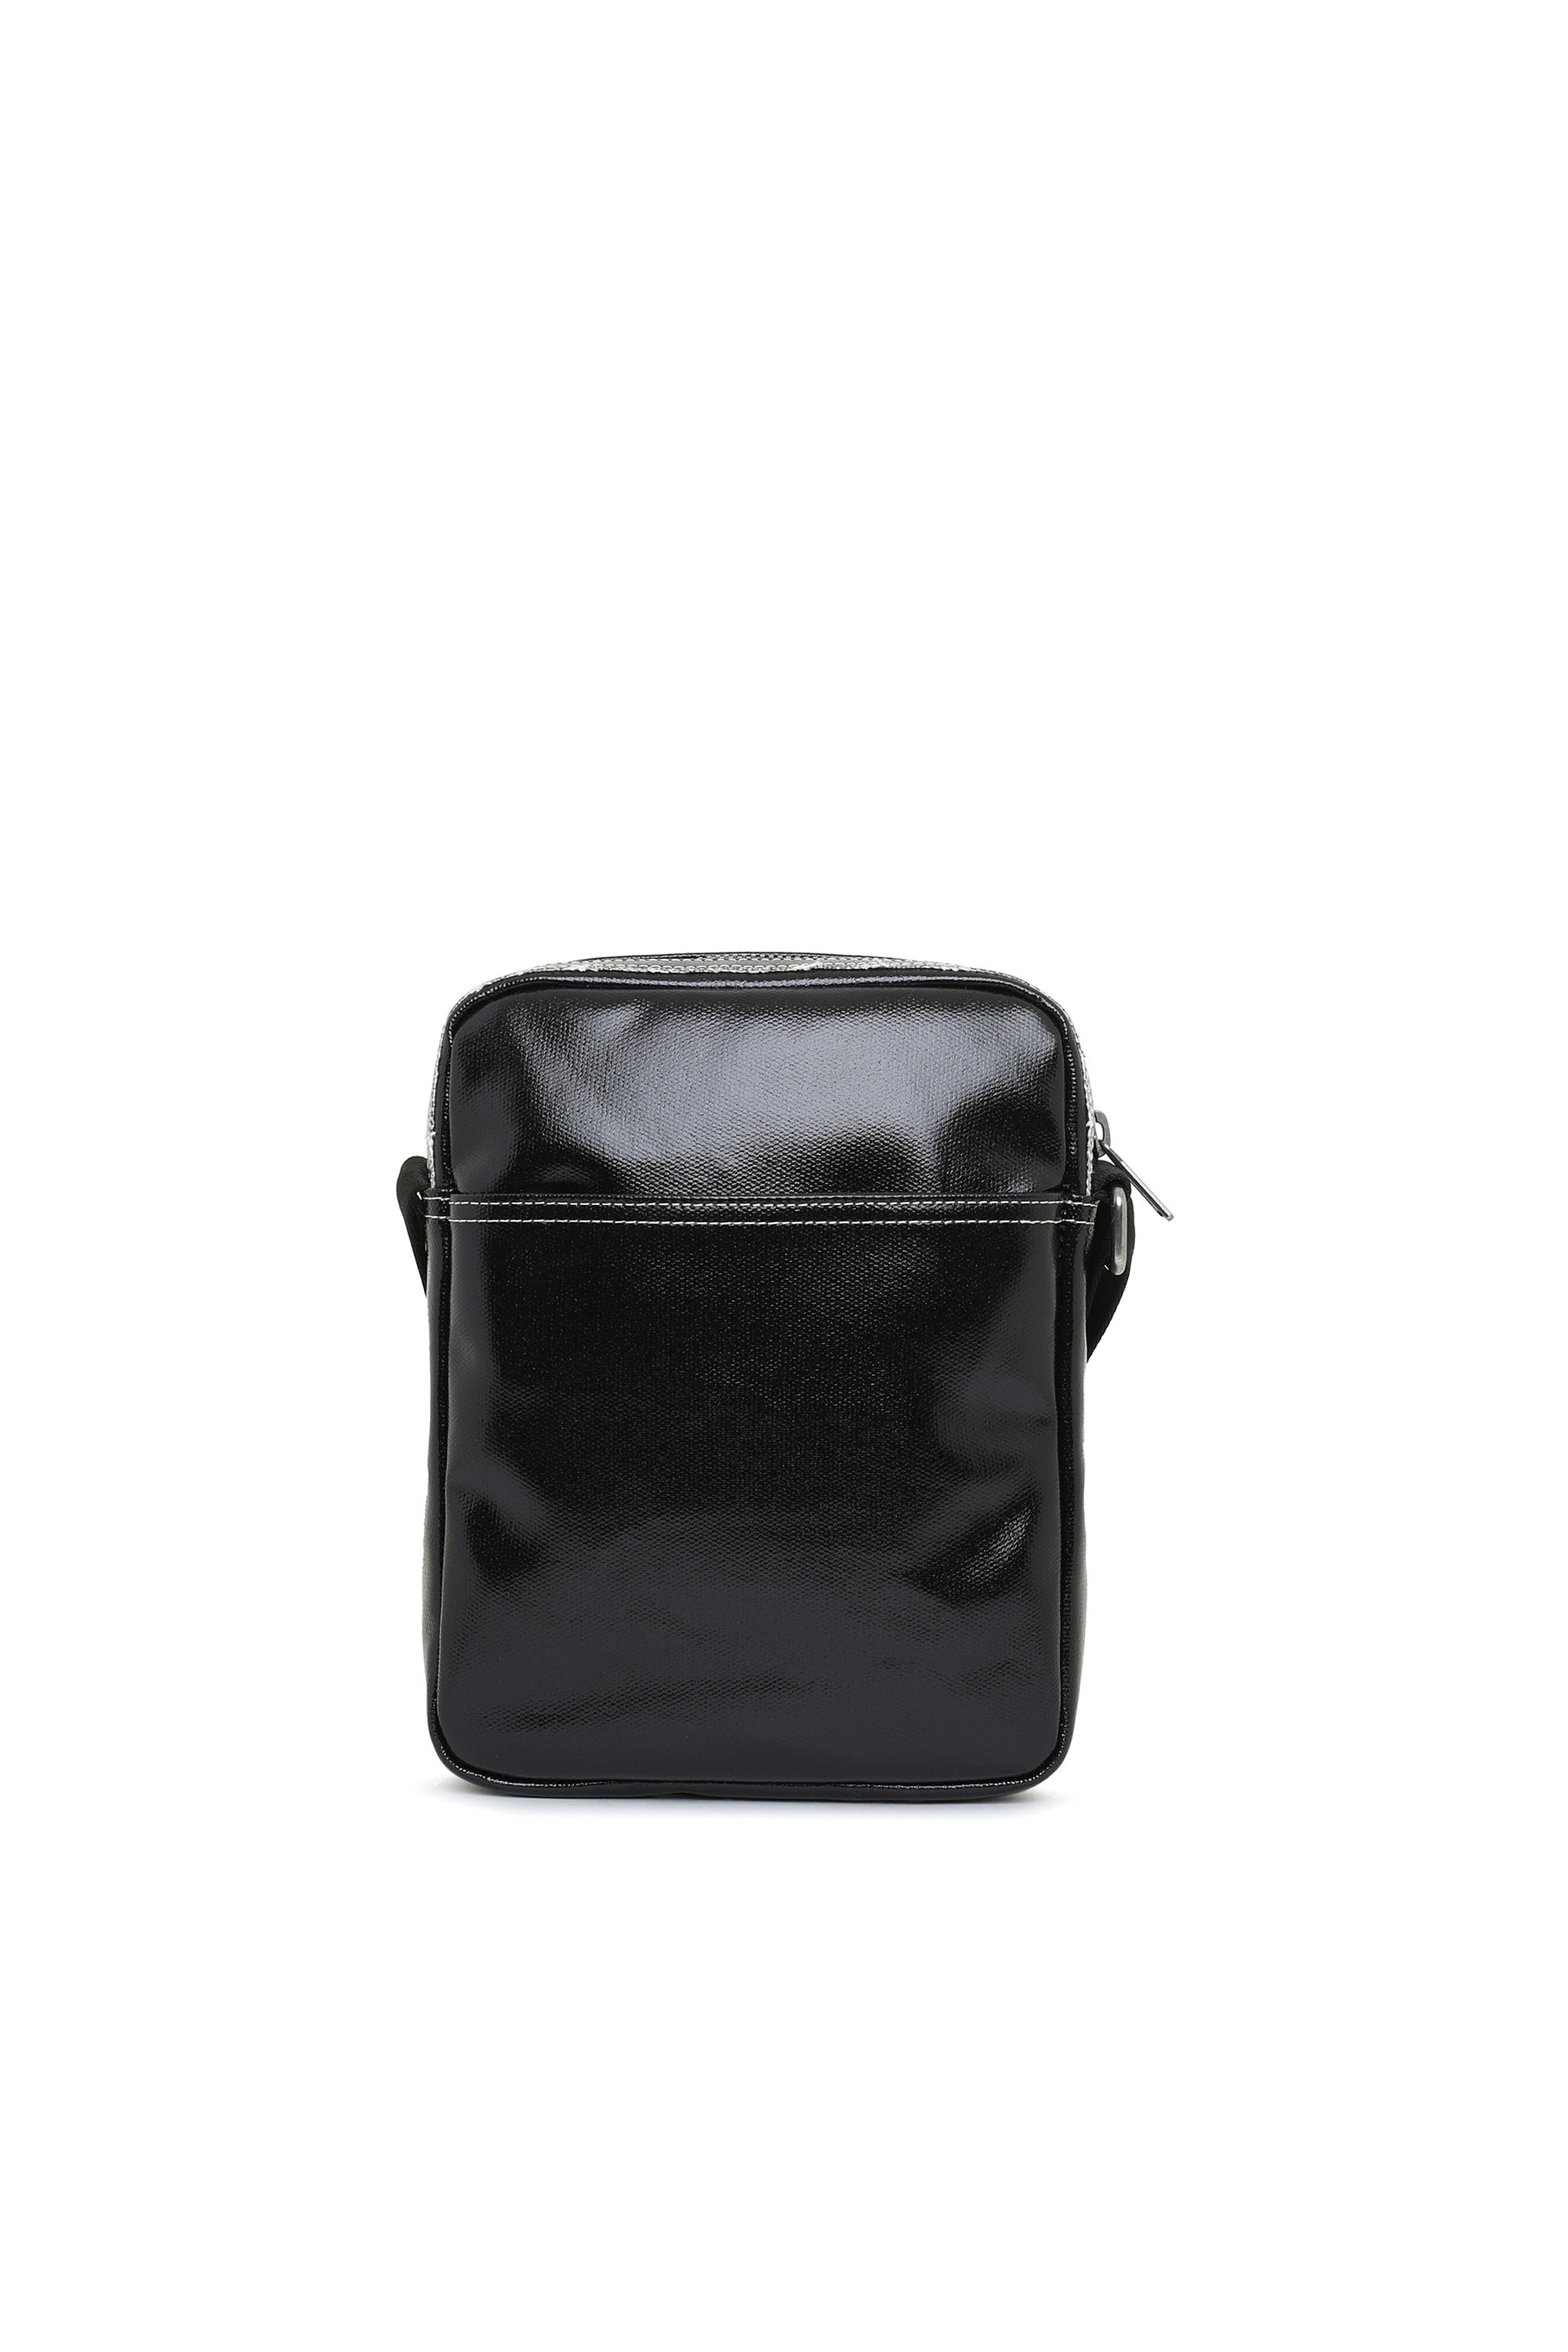 Men's Crossbody Bags: Poly, Slim, Compact | Diesel®